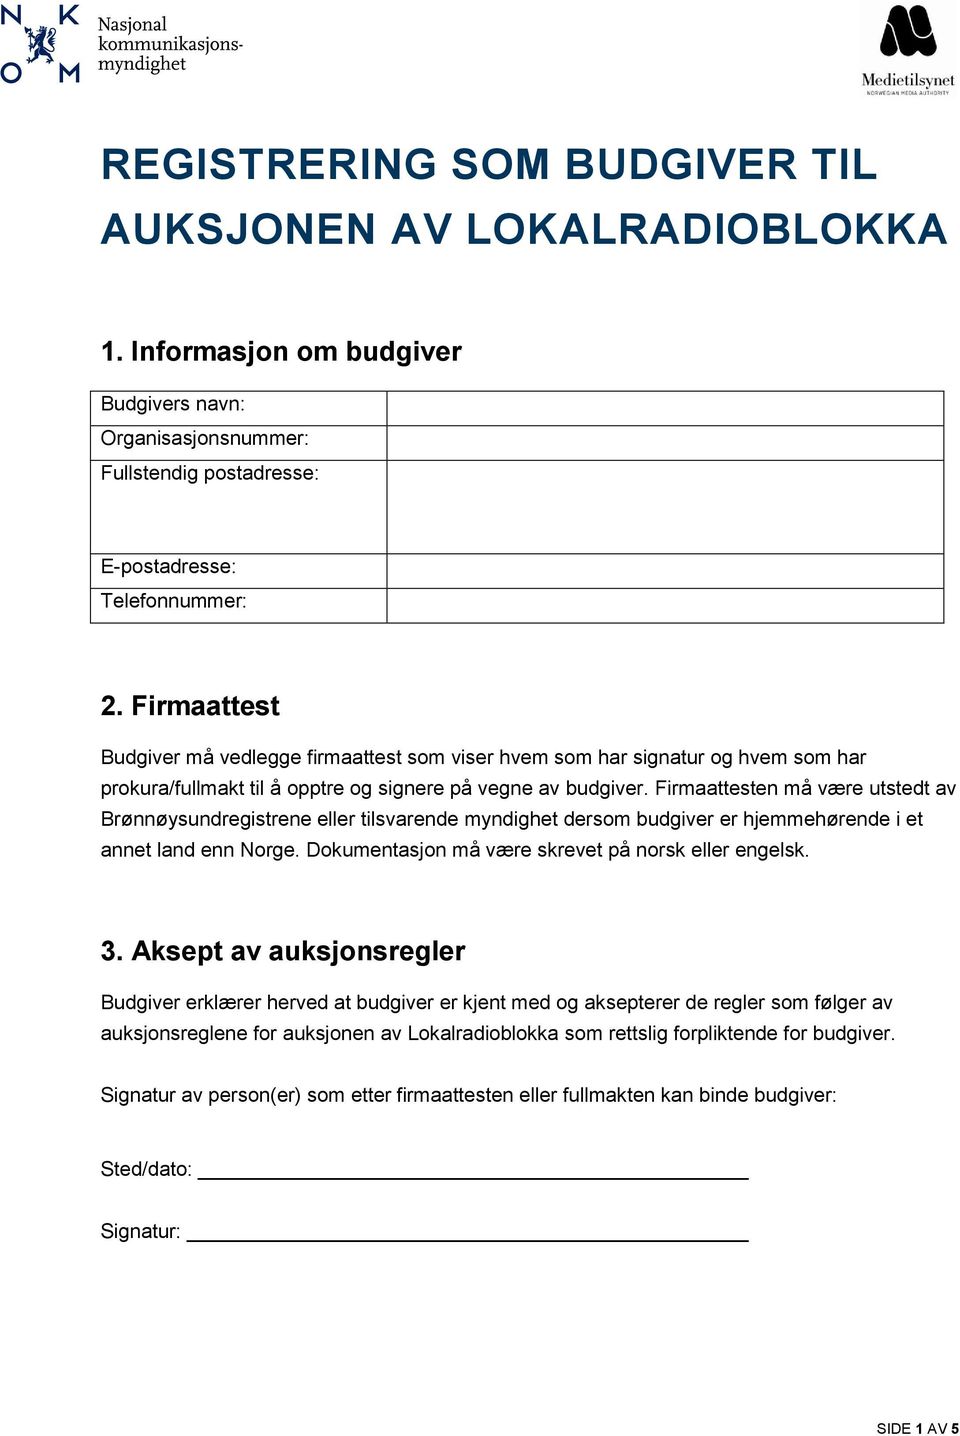 Firmaattesten må være utstedt av Brønnøysundregistrene eller tilsvarende myndighet dersom budgiver er hjemmehørende i et annet land enn Norge.